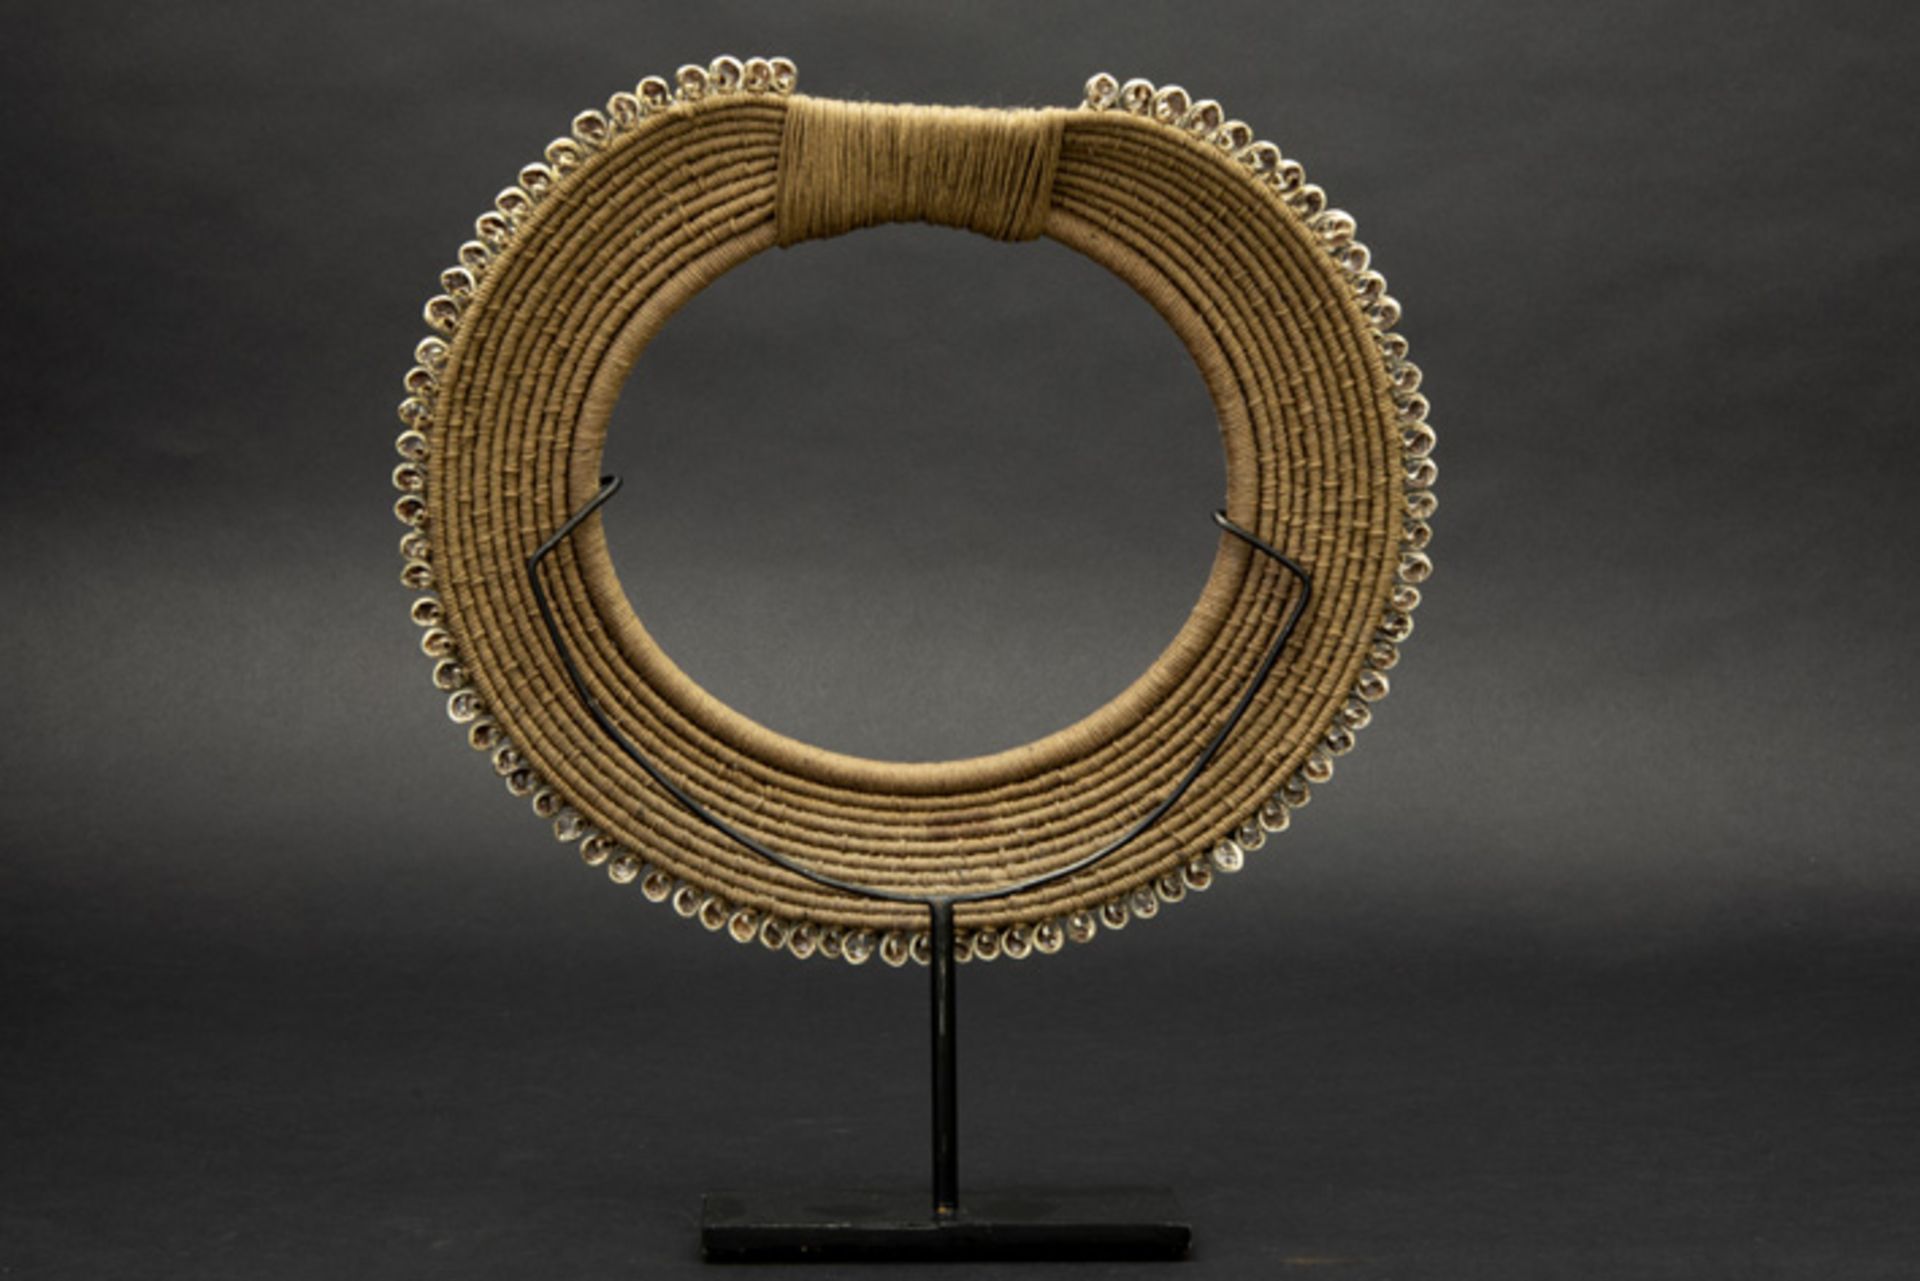 ethnic necklace in vegetal fibres and shell Etnische halsband van vegetale vezels en schelp - - Image 2 of 2